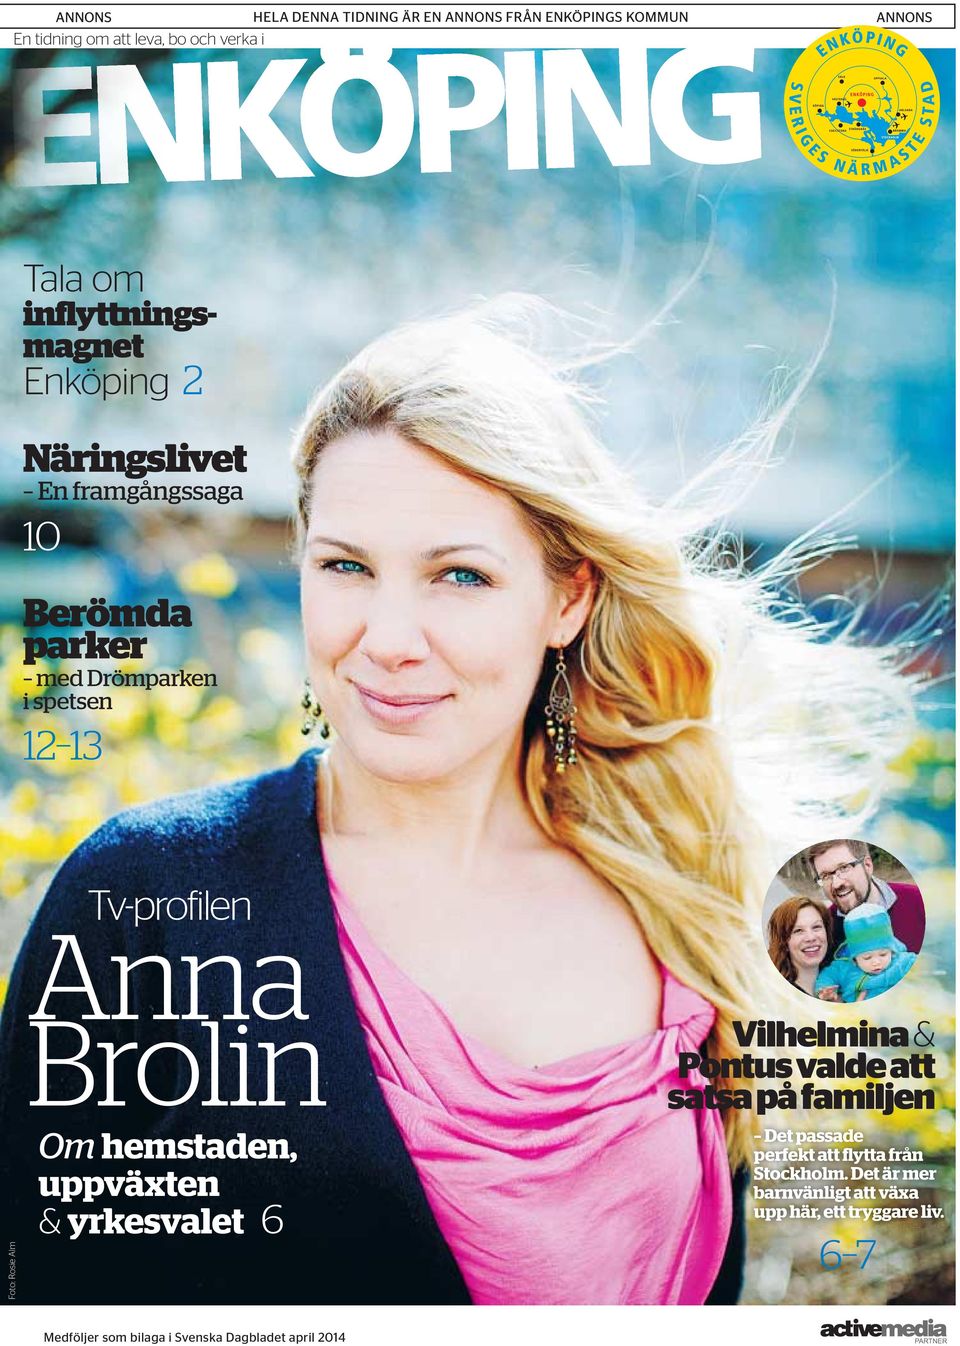 Tv-profilen Anna Brolin Om hemstaden, uppväxten & yrkesvalet 6 Vilhelmina & Pontus valde att satsa på familjen Det passade